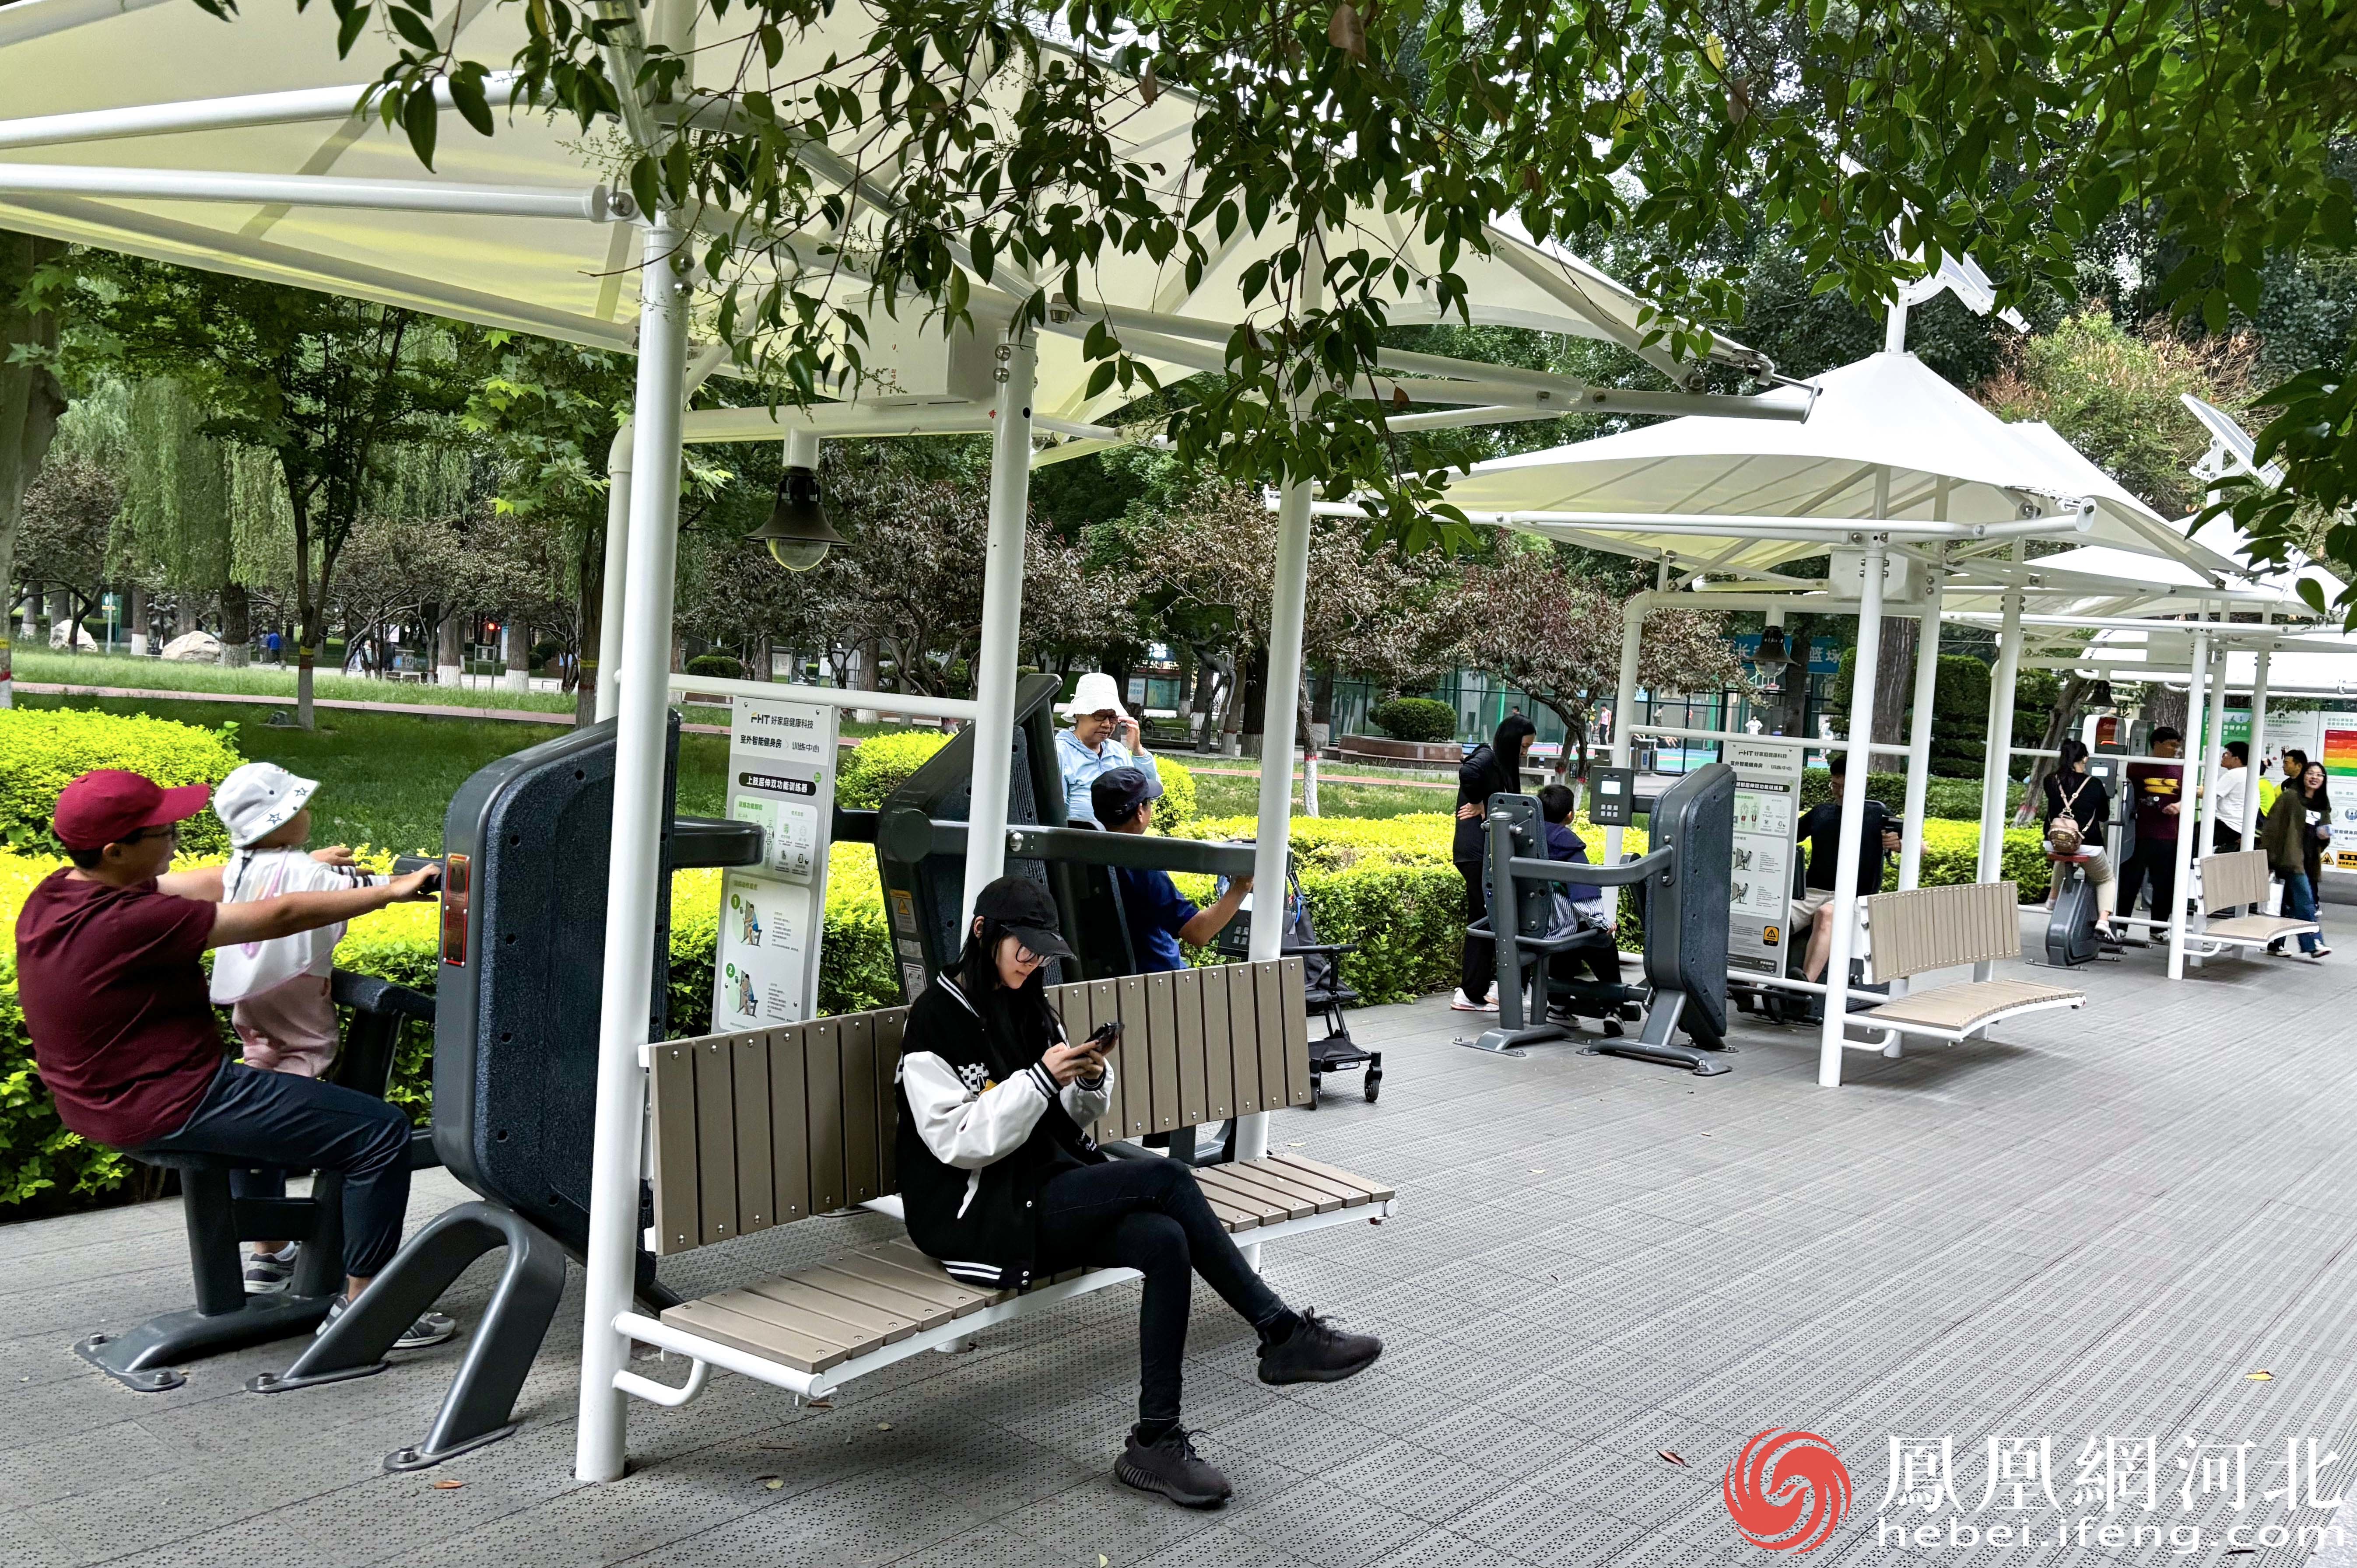 长安公园的自助健身器械区域为市民们提供了便捷且多样的锻炼选择，吸引了众多市民前来休闲、锻炼。